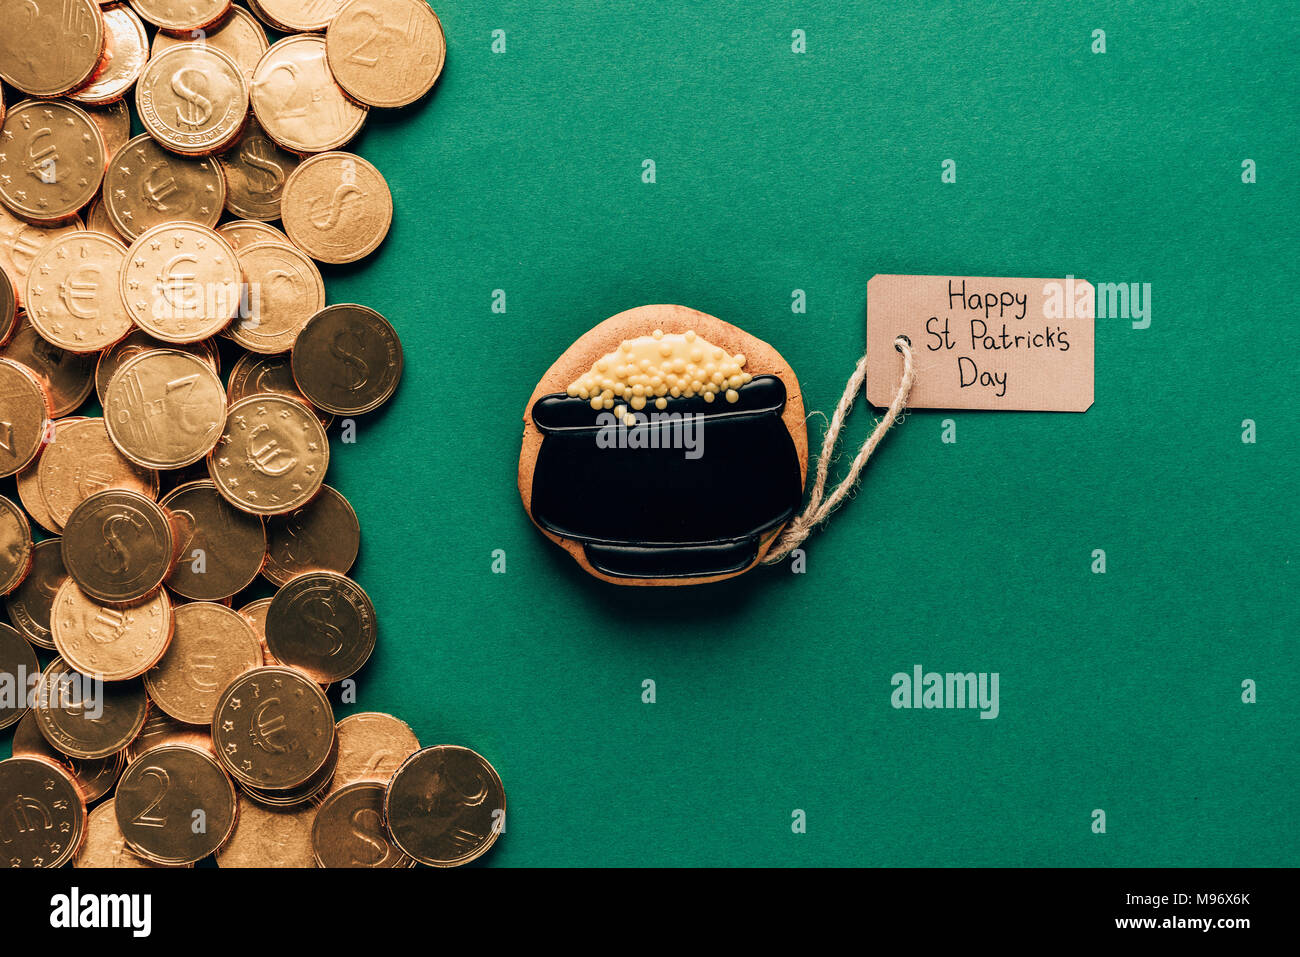 Blick von oben auf die Vereisung Cookie und goldenen Münzen auf Grün, st patricks day Konzept Stockfoto